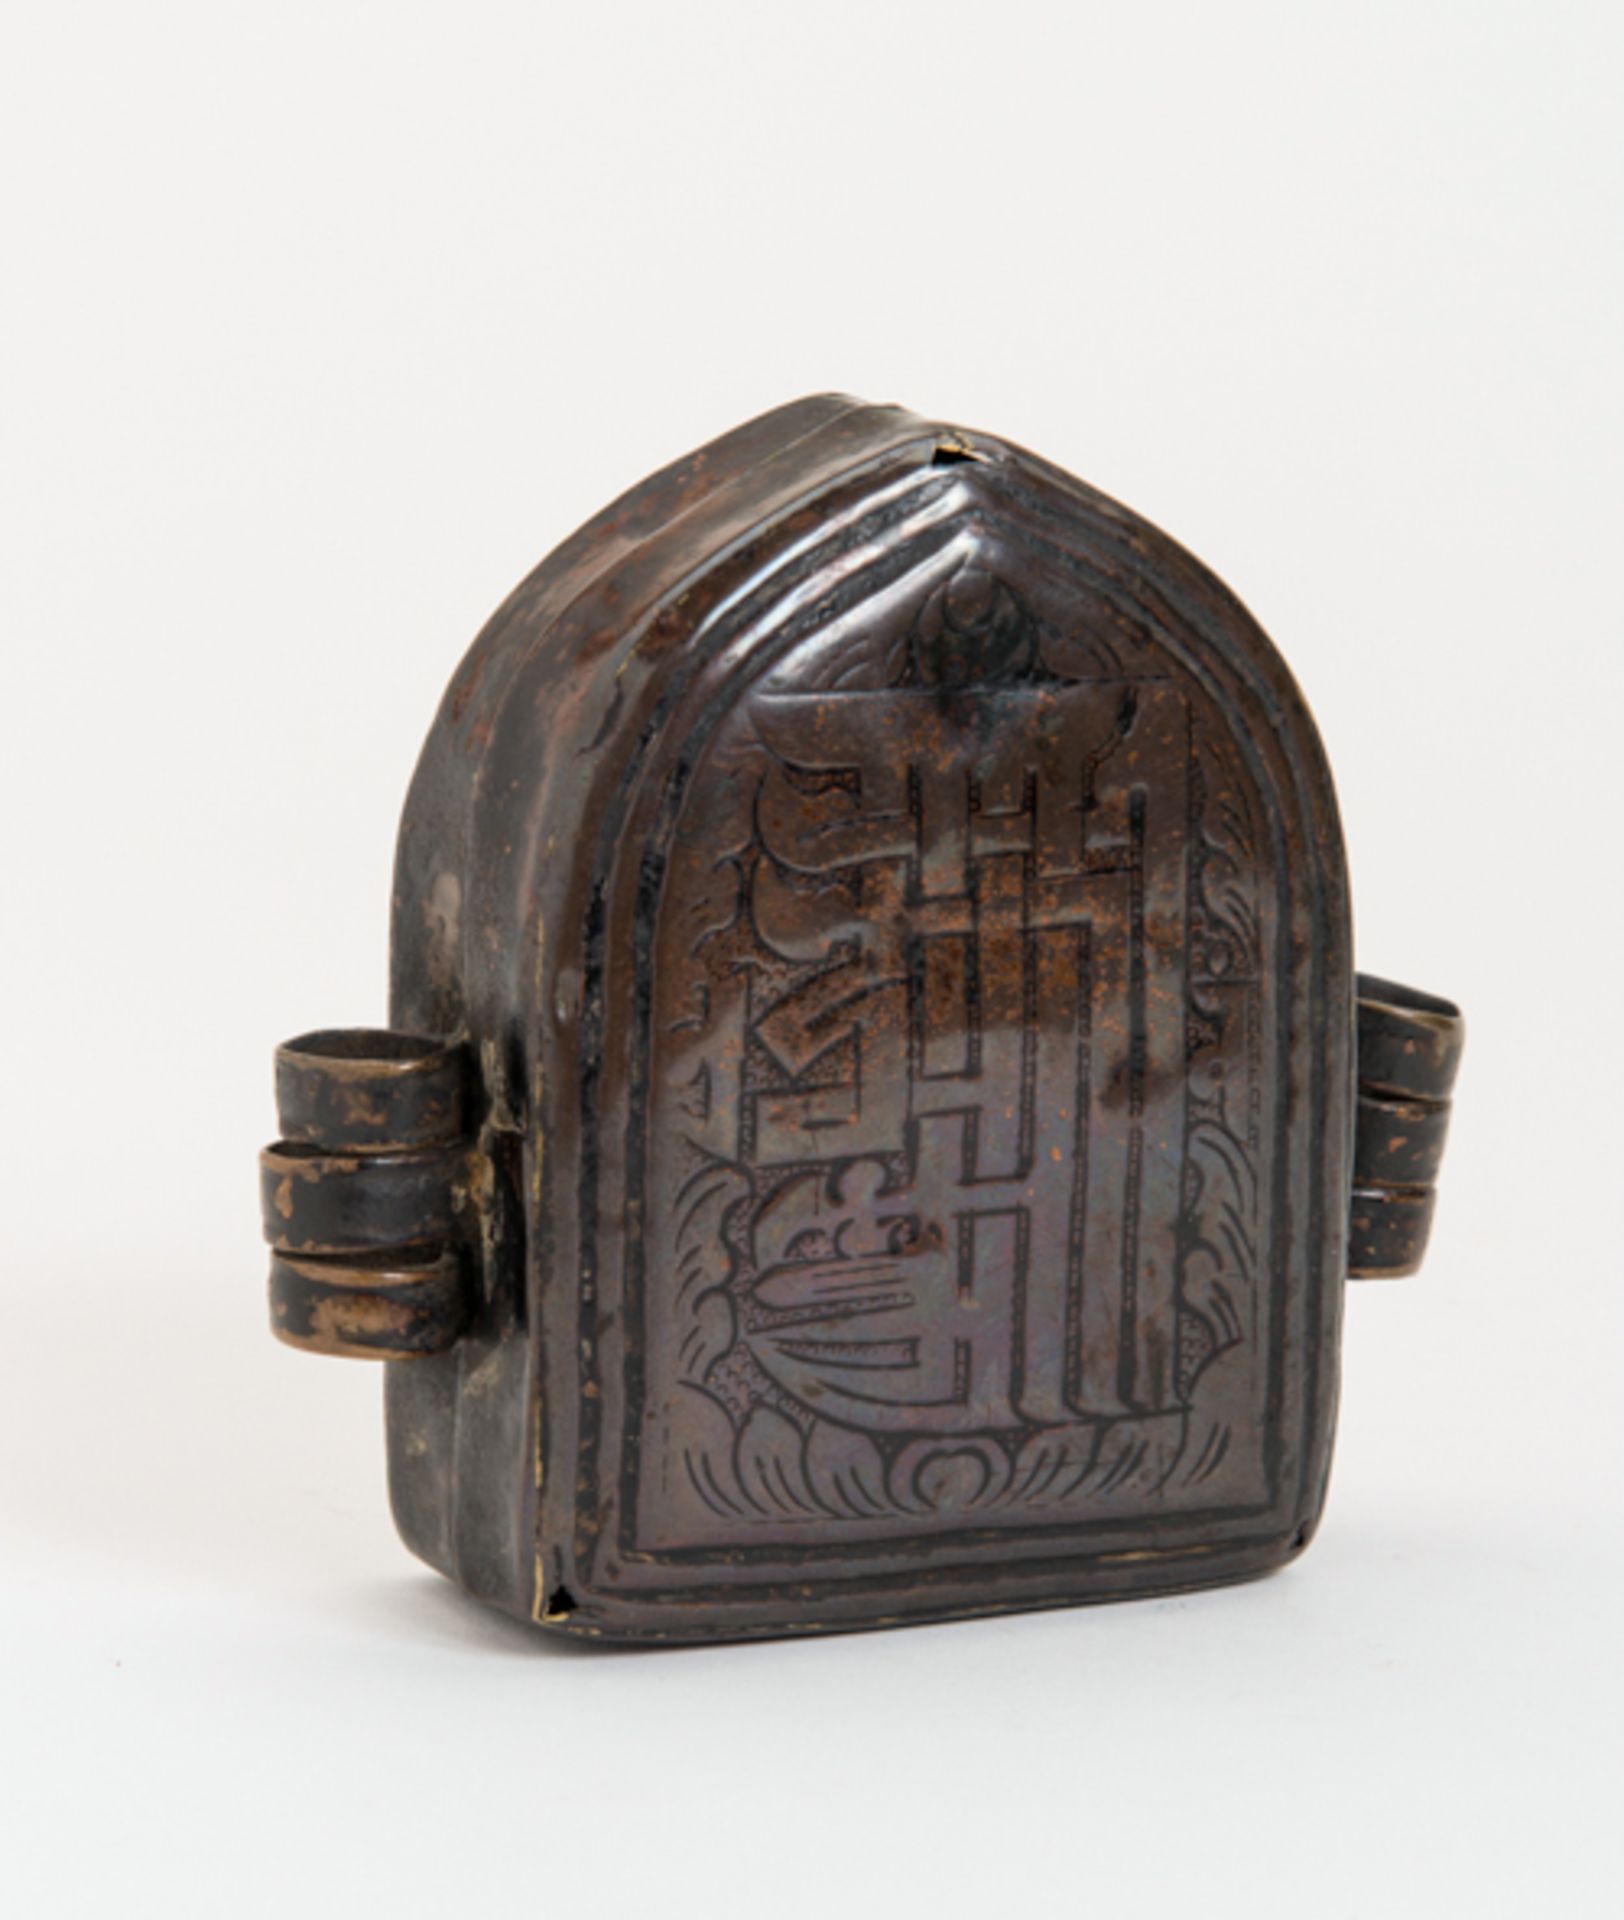 REISEGAU
Kupferbronze. Tibet, 19. Jh.Ein Amulett-Behälter Gau, der auf Reisen mitgenommen wurde